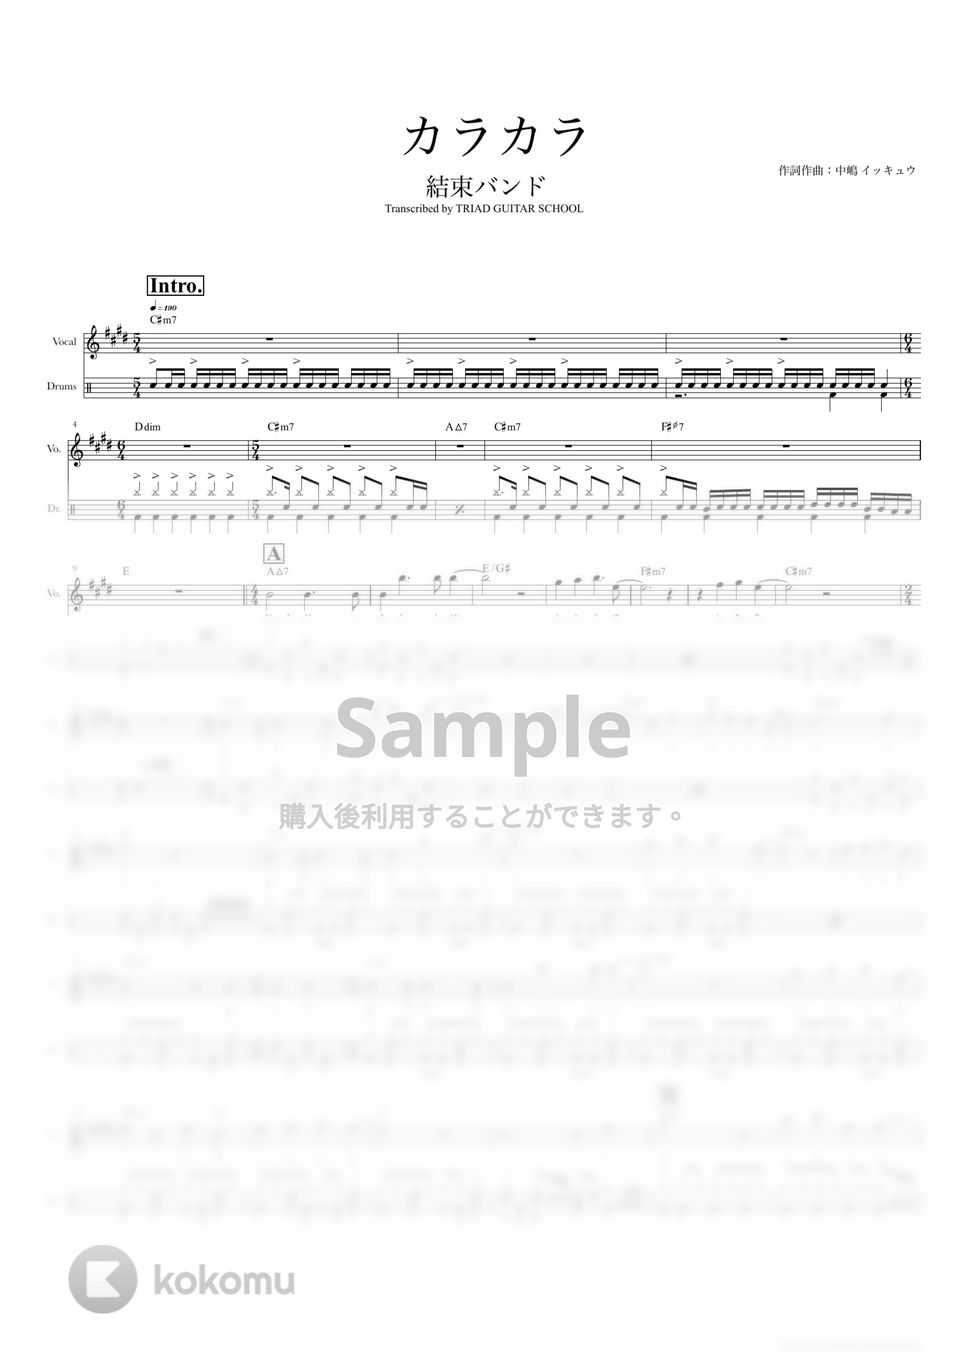 結束バンド - カラカラ (ドラムスコア・歌詞・コード付き) by TRIAD GUITAR SCHOOL